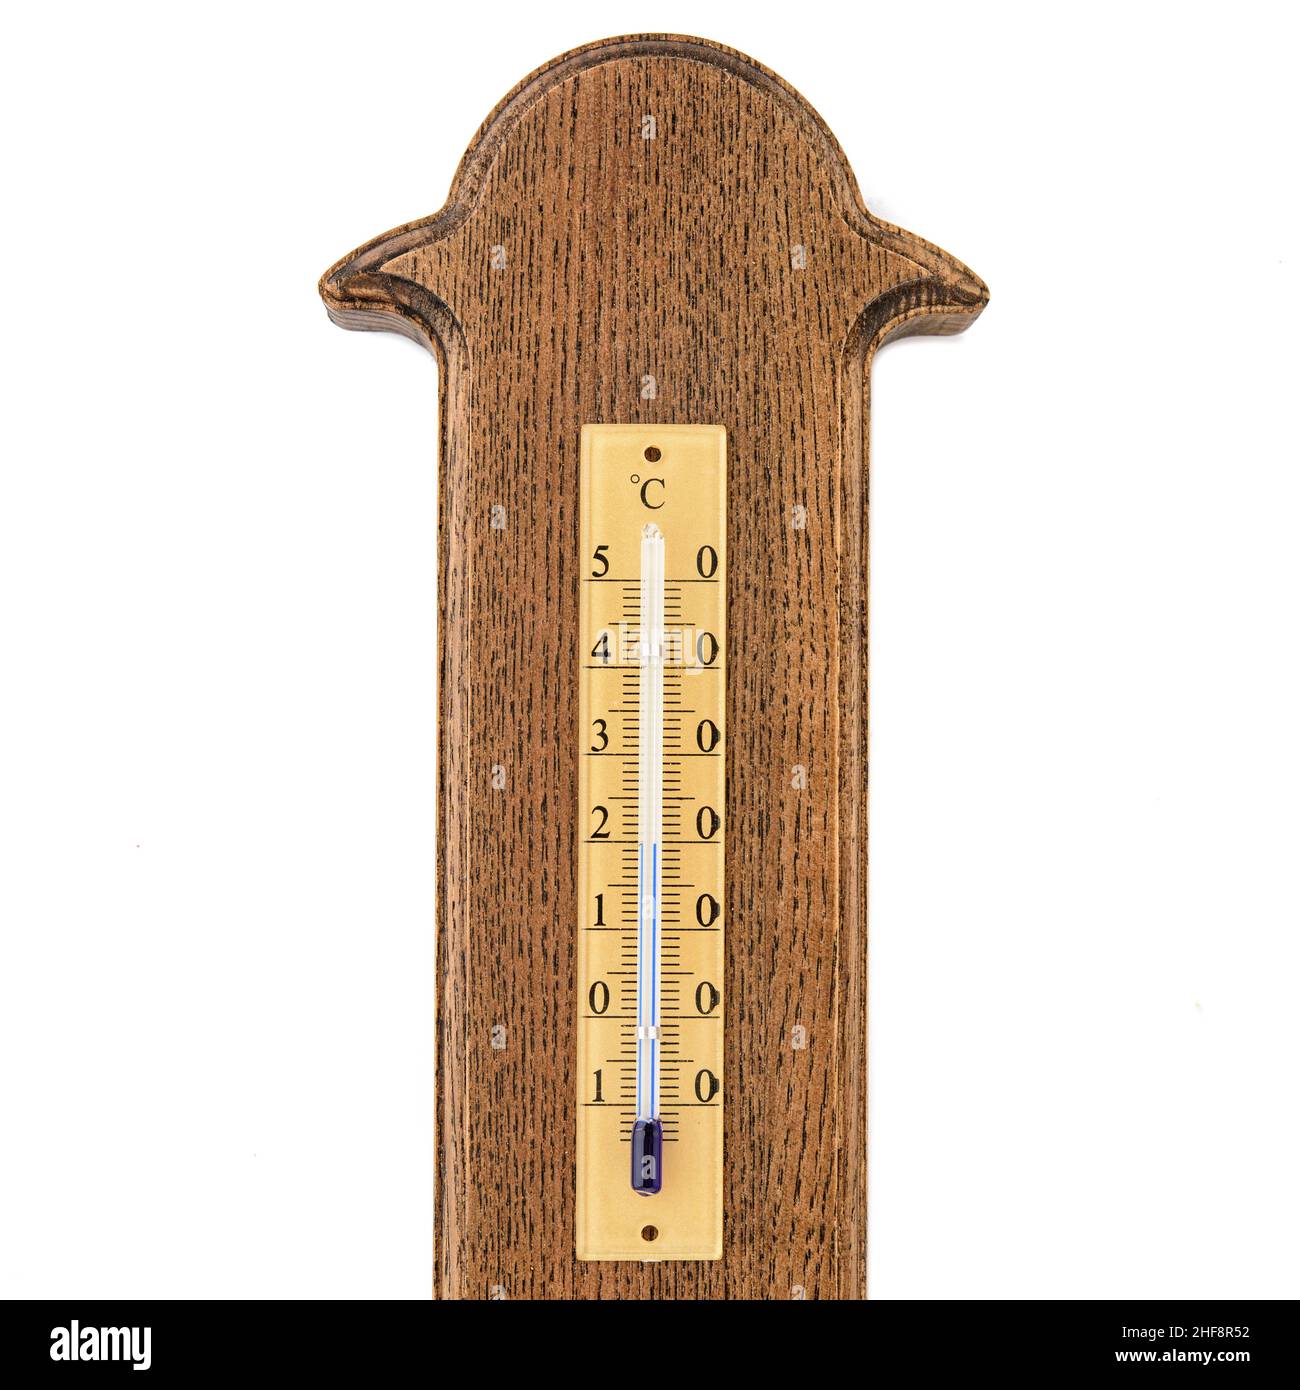 Viejo Termómetro Para Medir La Temperatura En La Casa Fotos, retratos,  imágenes y fotografía de archivo libres de derecho. Image 6338483